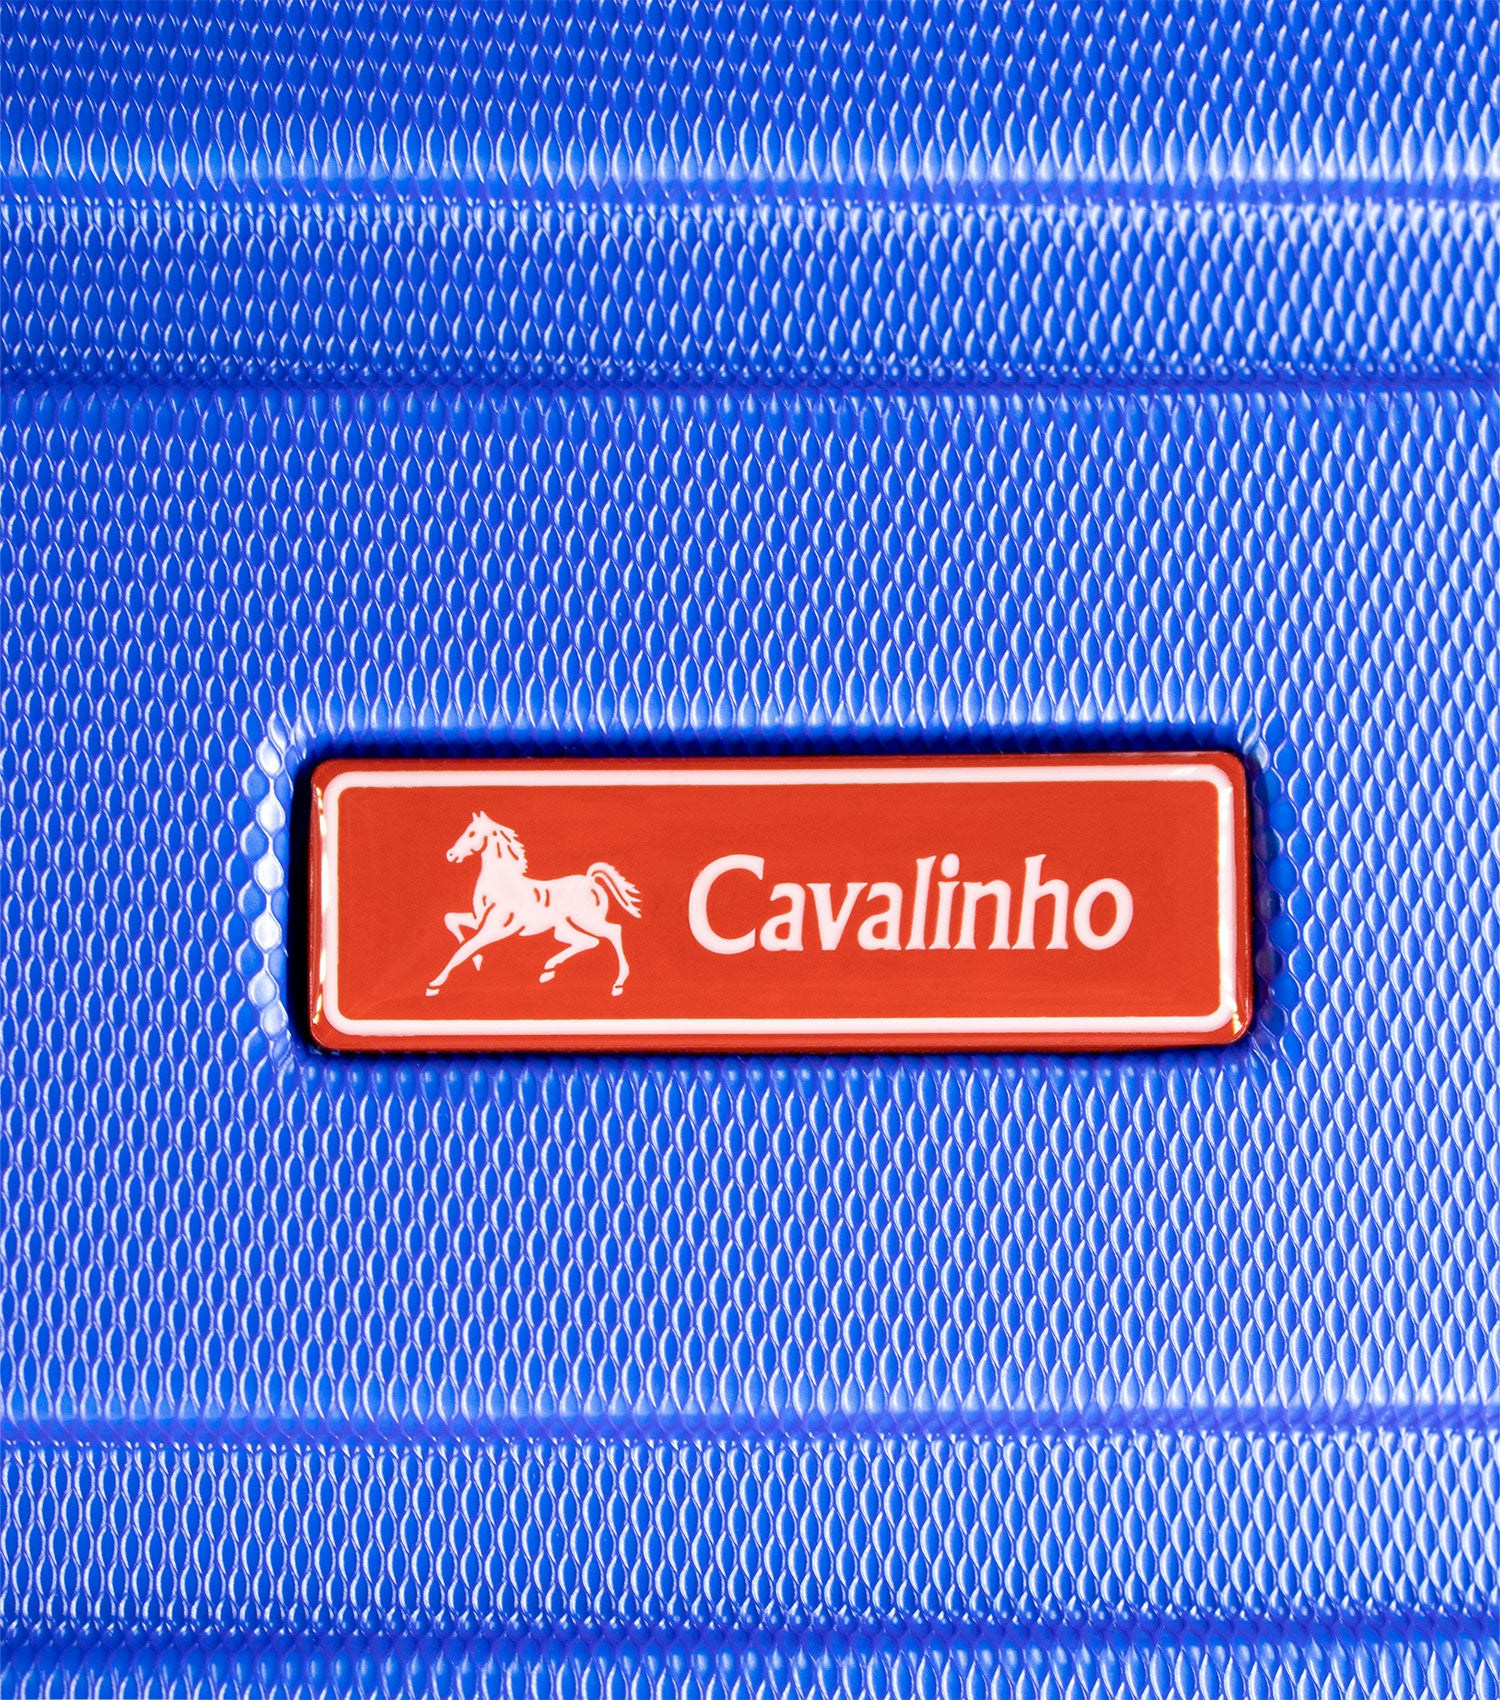 Cavalinho Bon Voyage Carry-on Hardside Luggage (19") - 19 inch Blue - 68020005.03.19_P05